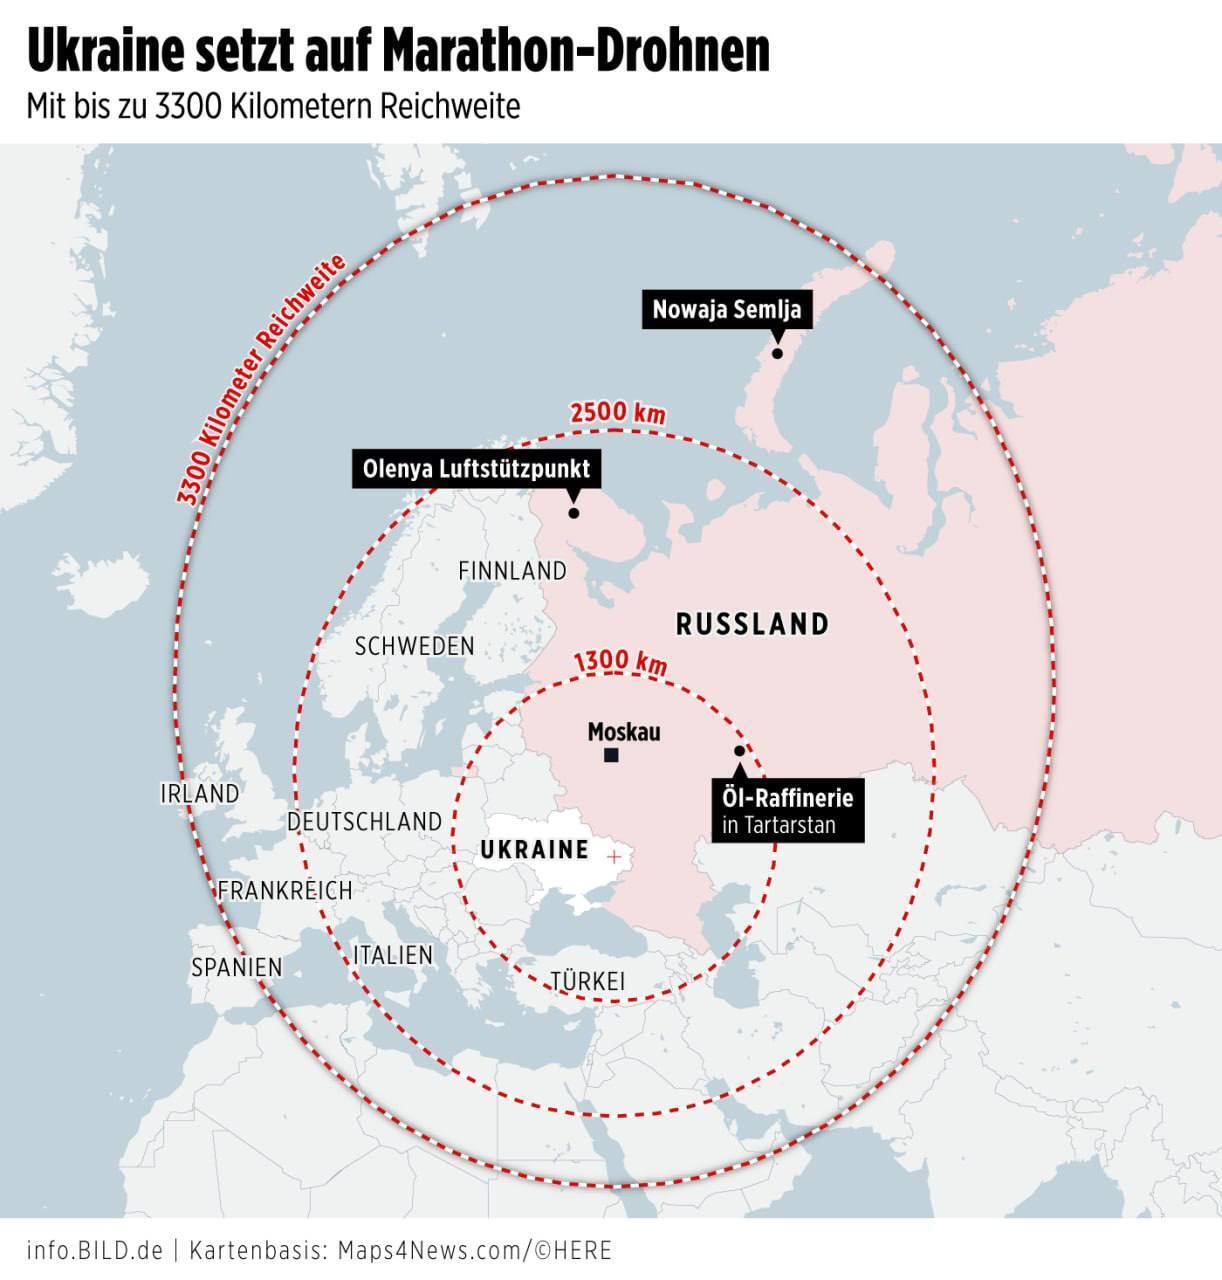 З дальністю до 2000 км і більше: Україна може застосувати далекобійні БПЛА, здатні атакувати Урал та Заполяр'я – BILD